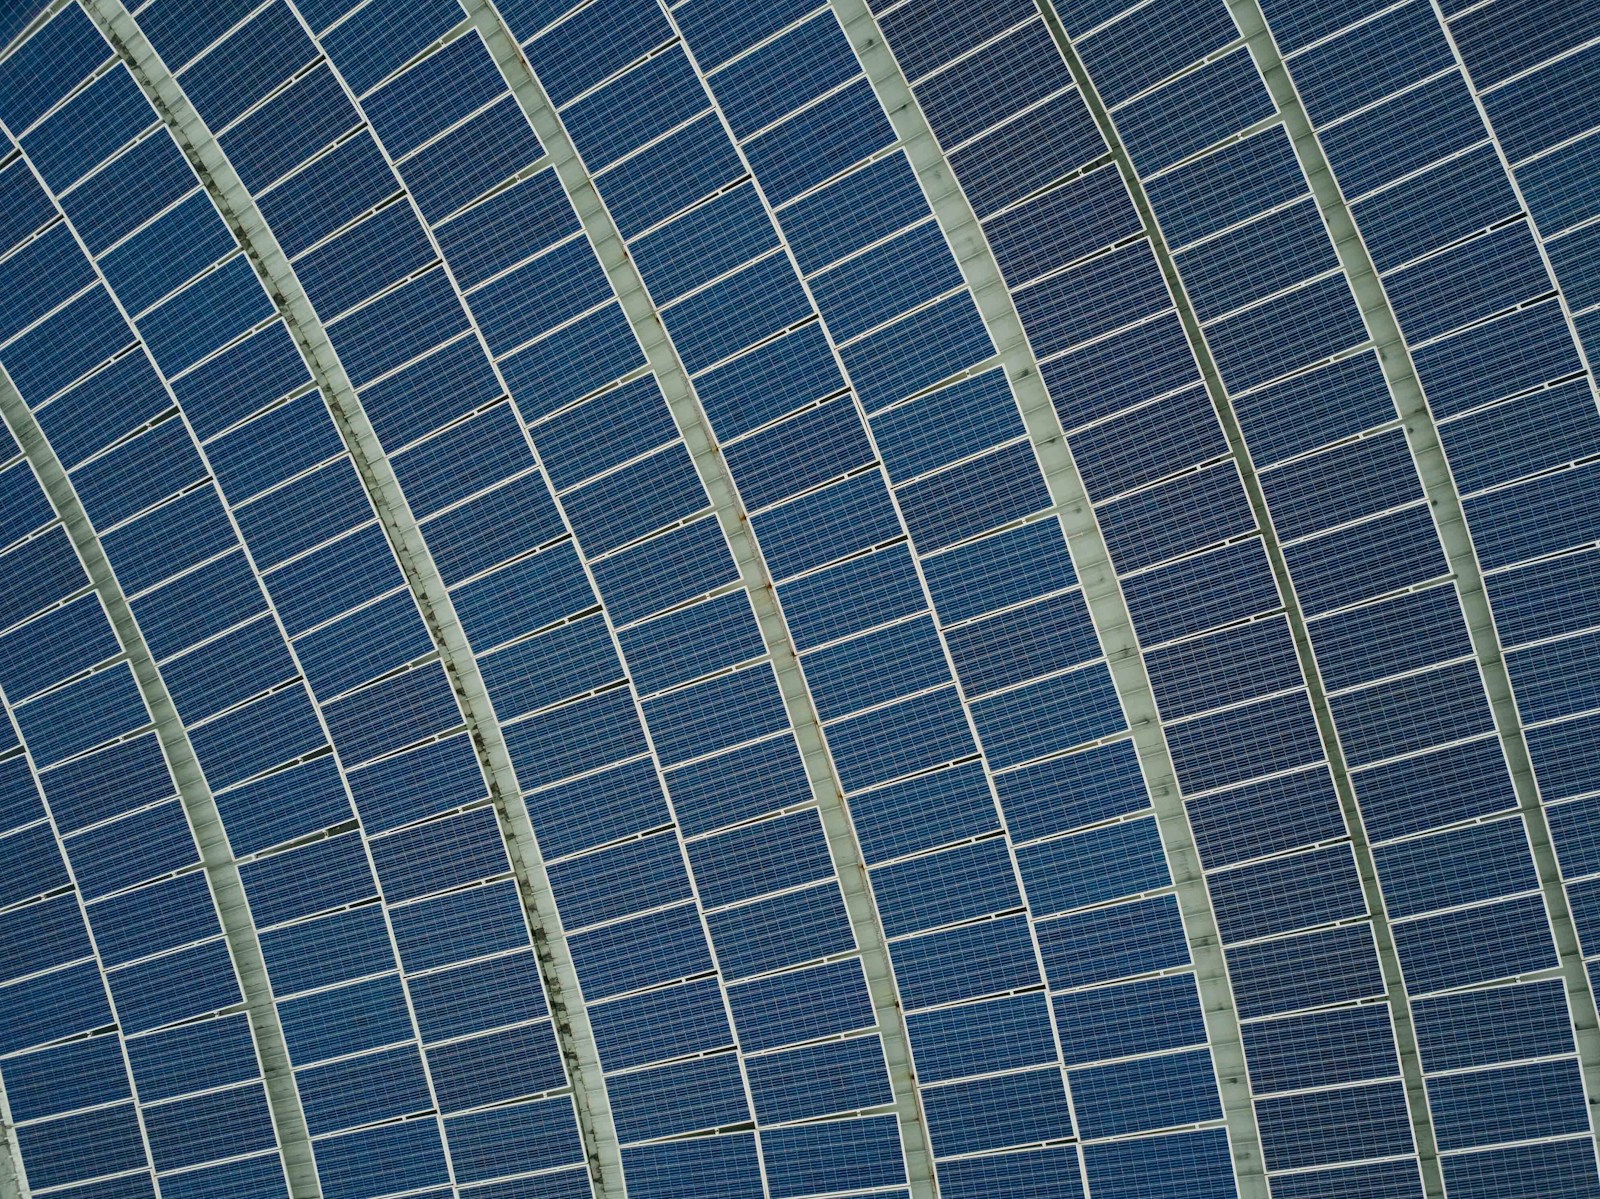 installer des panneaux solaires sur un hangar : un investissement rentable